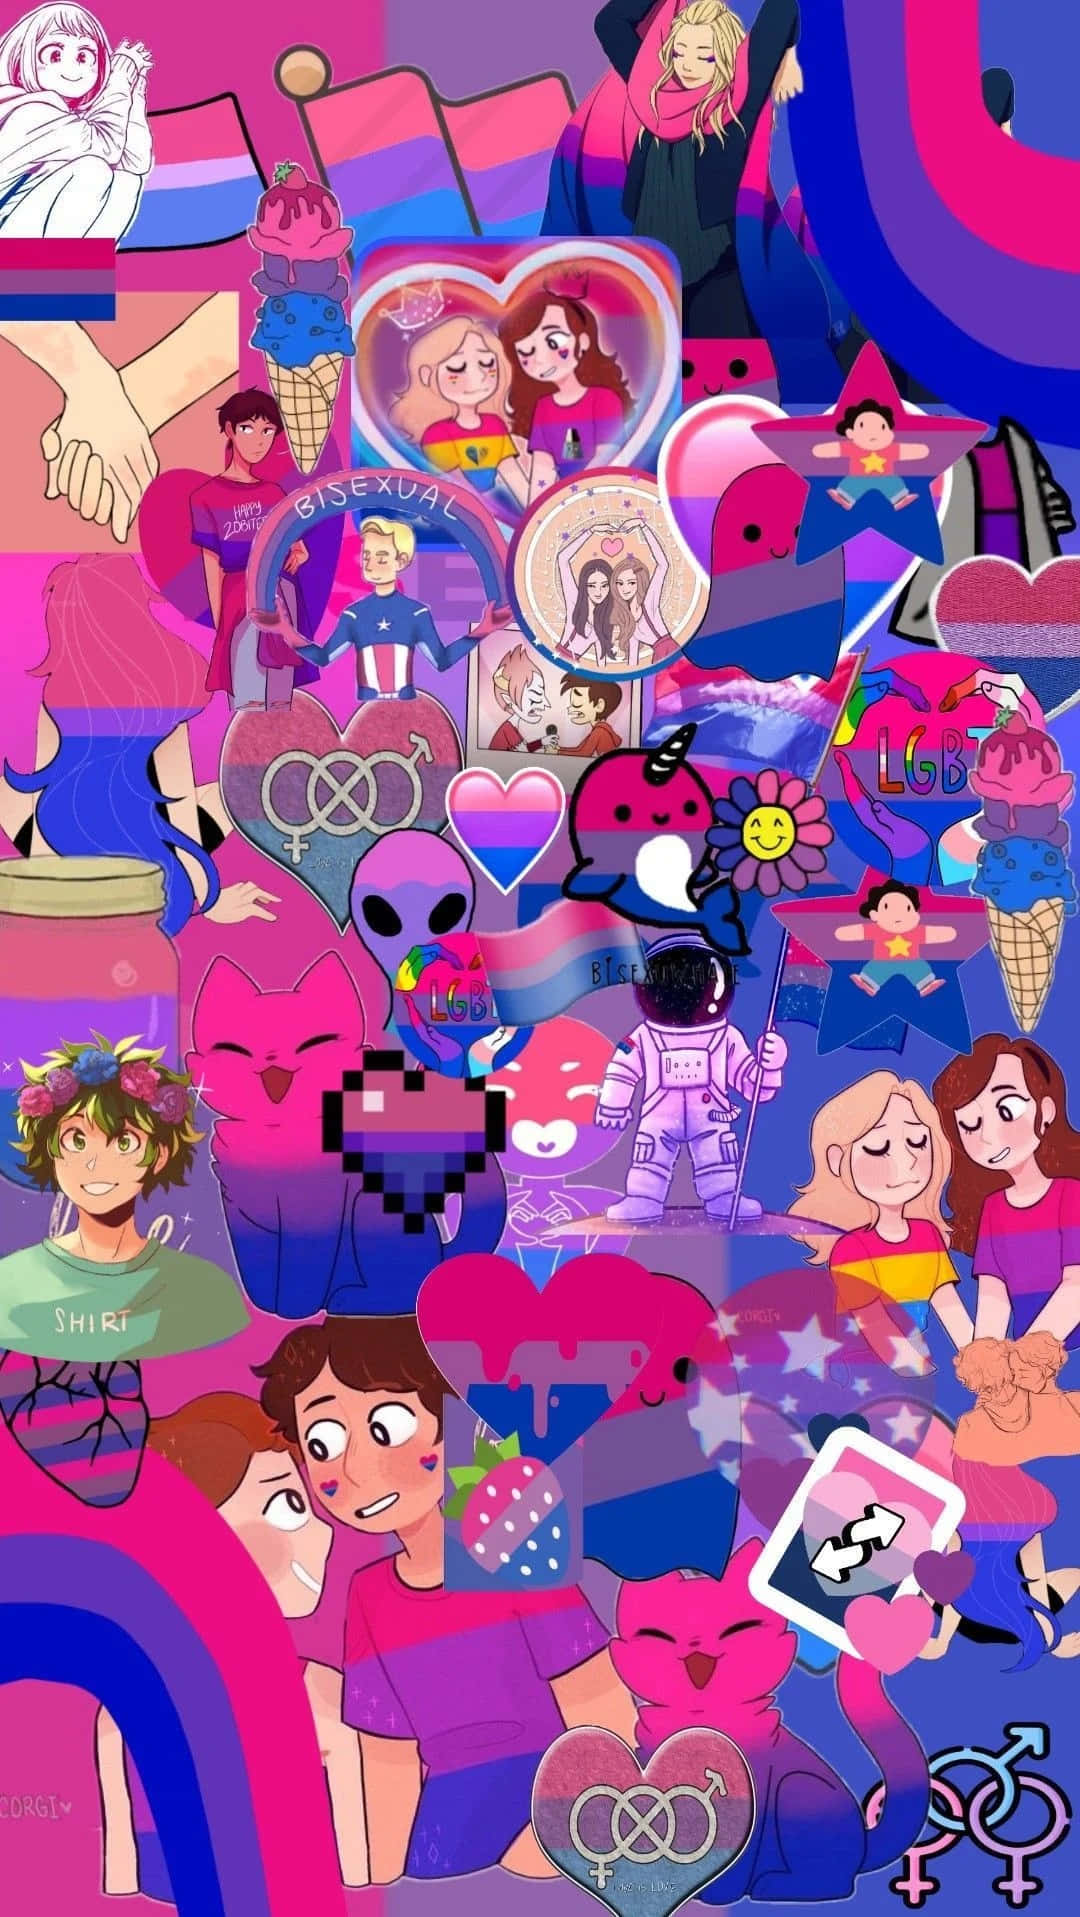 Einecollage Von Menschen In Rosa Und Blau Wallpaper